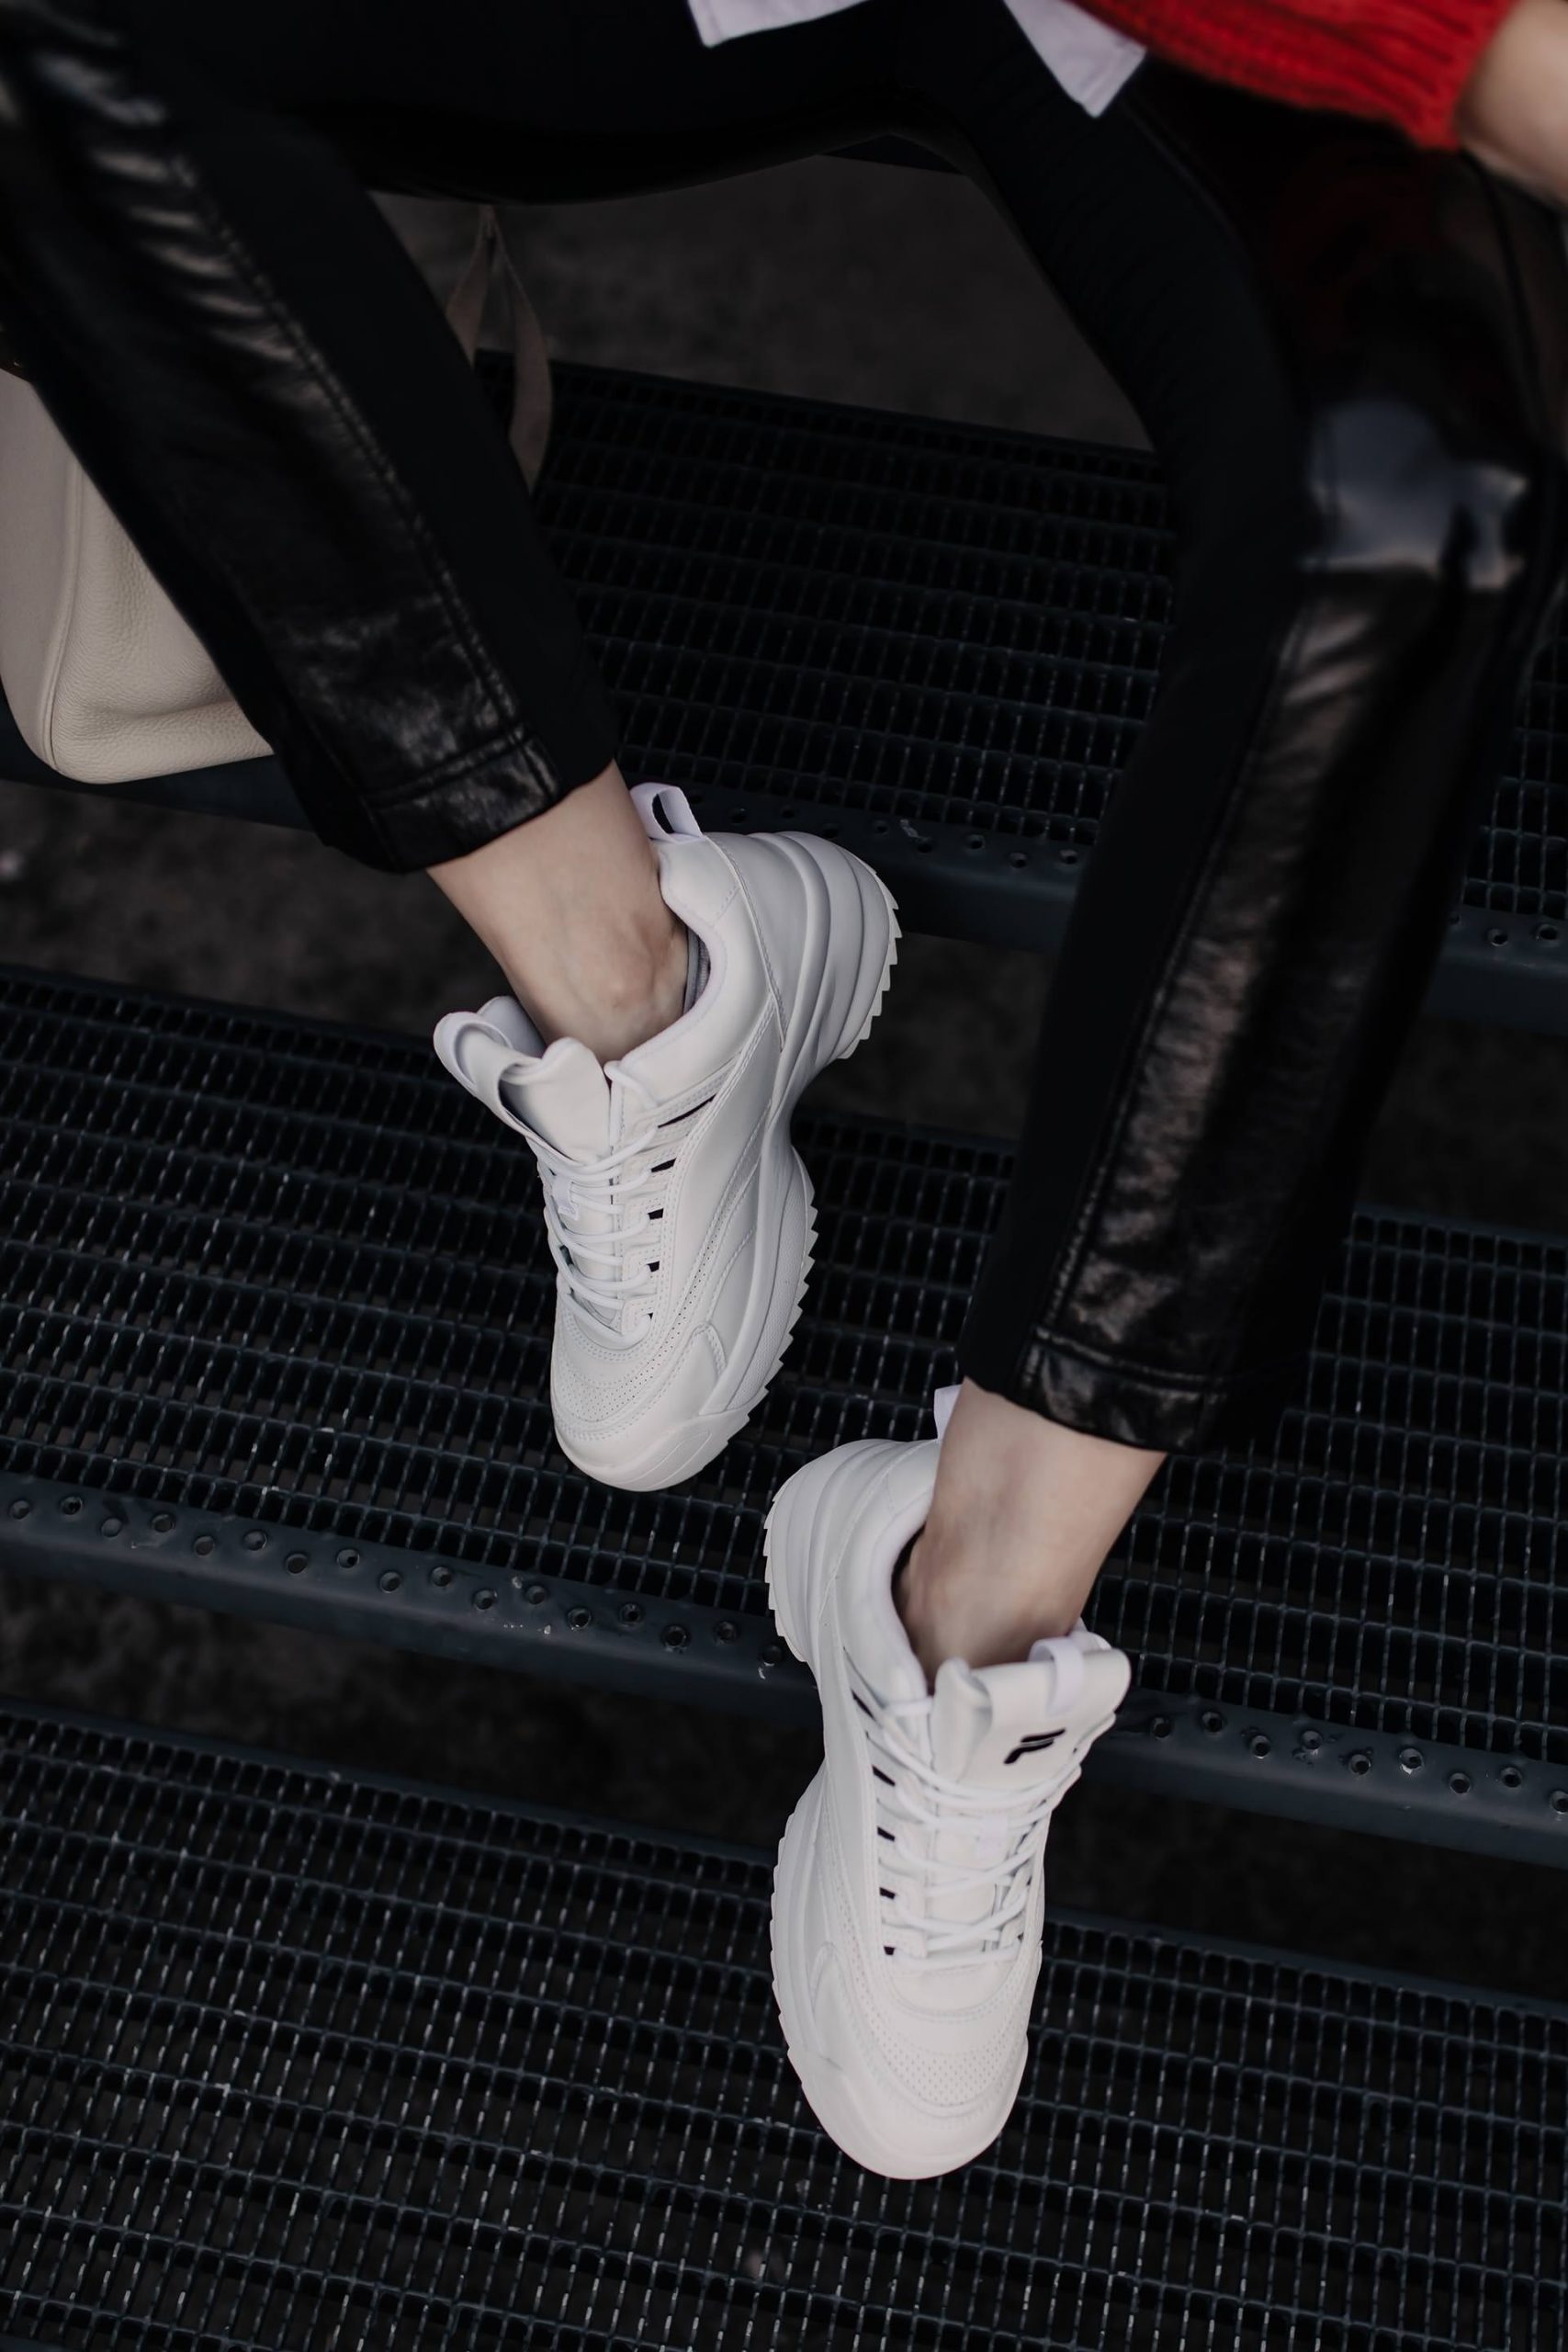 Du möchtest weiße #Sneakers kombinieren und bist auf der Suche nach Outfit-Inspirationen? Dann herzlich willkommen auf meinem #Modeblog, wo ich dir heute ein kleines Sneakers #Lookbook präsentiere. www.whoismocca.com #frühlingsoutfit #modetrends #alltagsoutfit